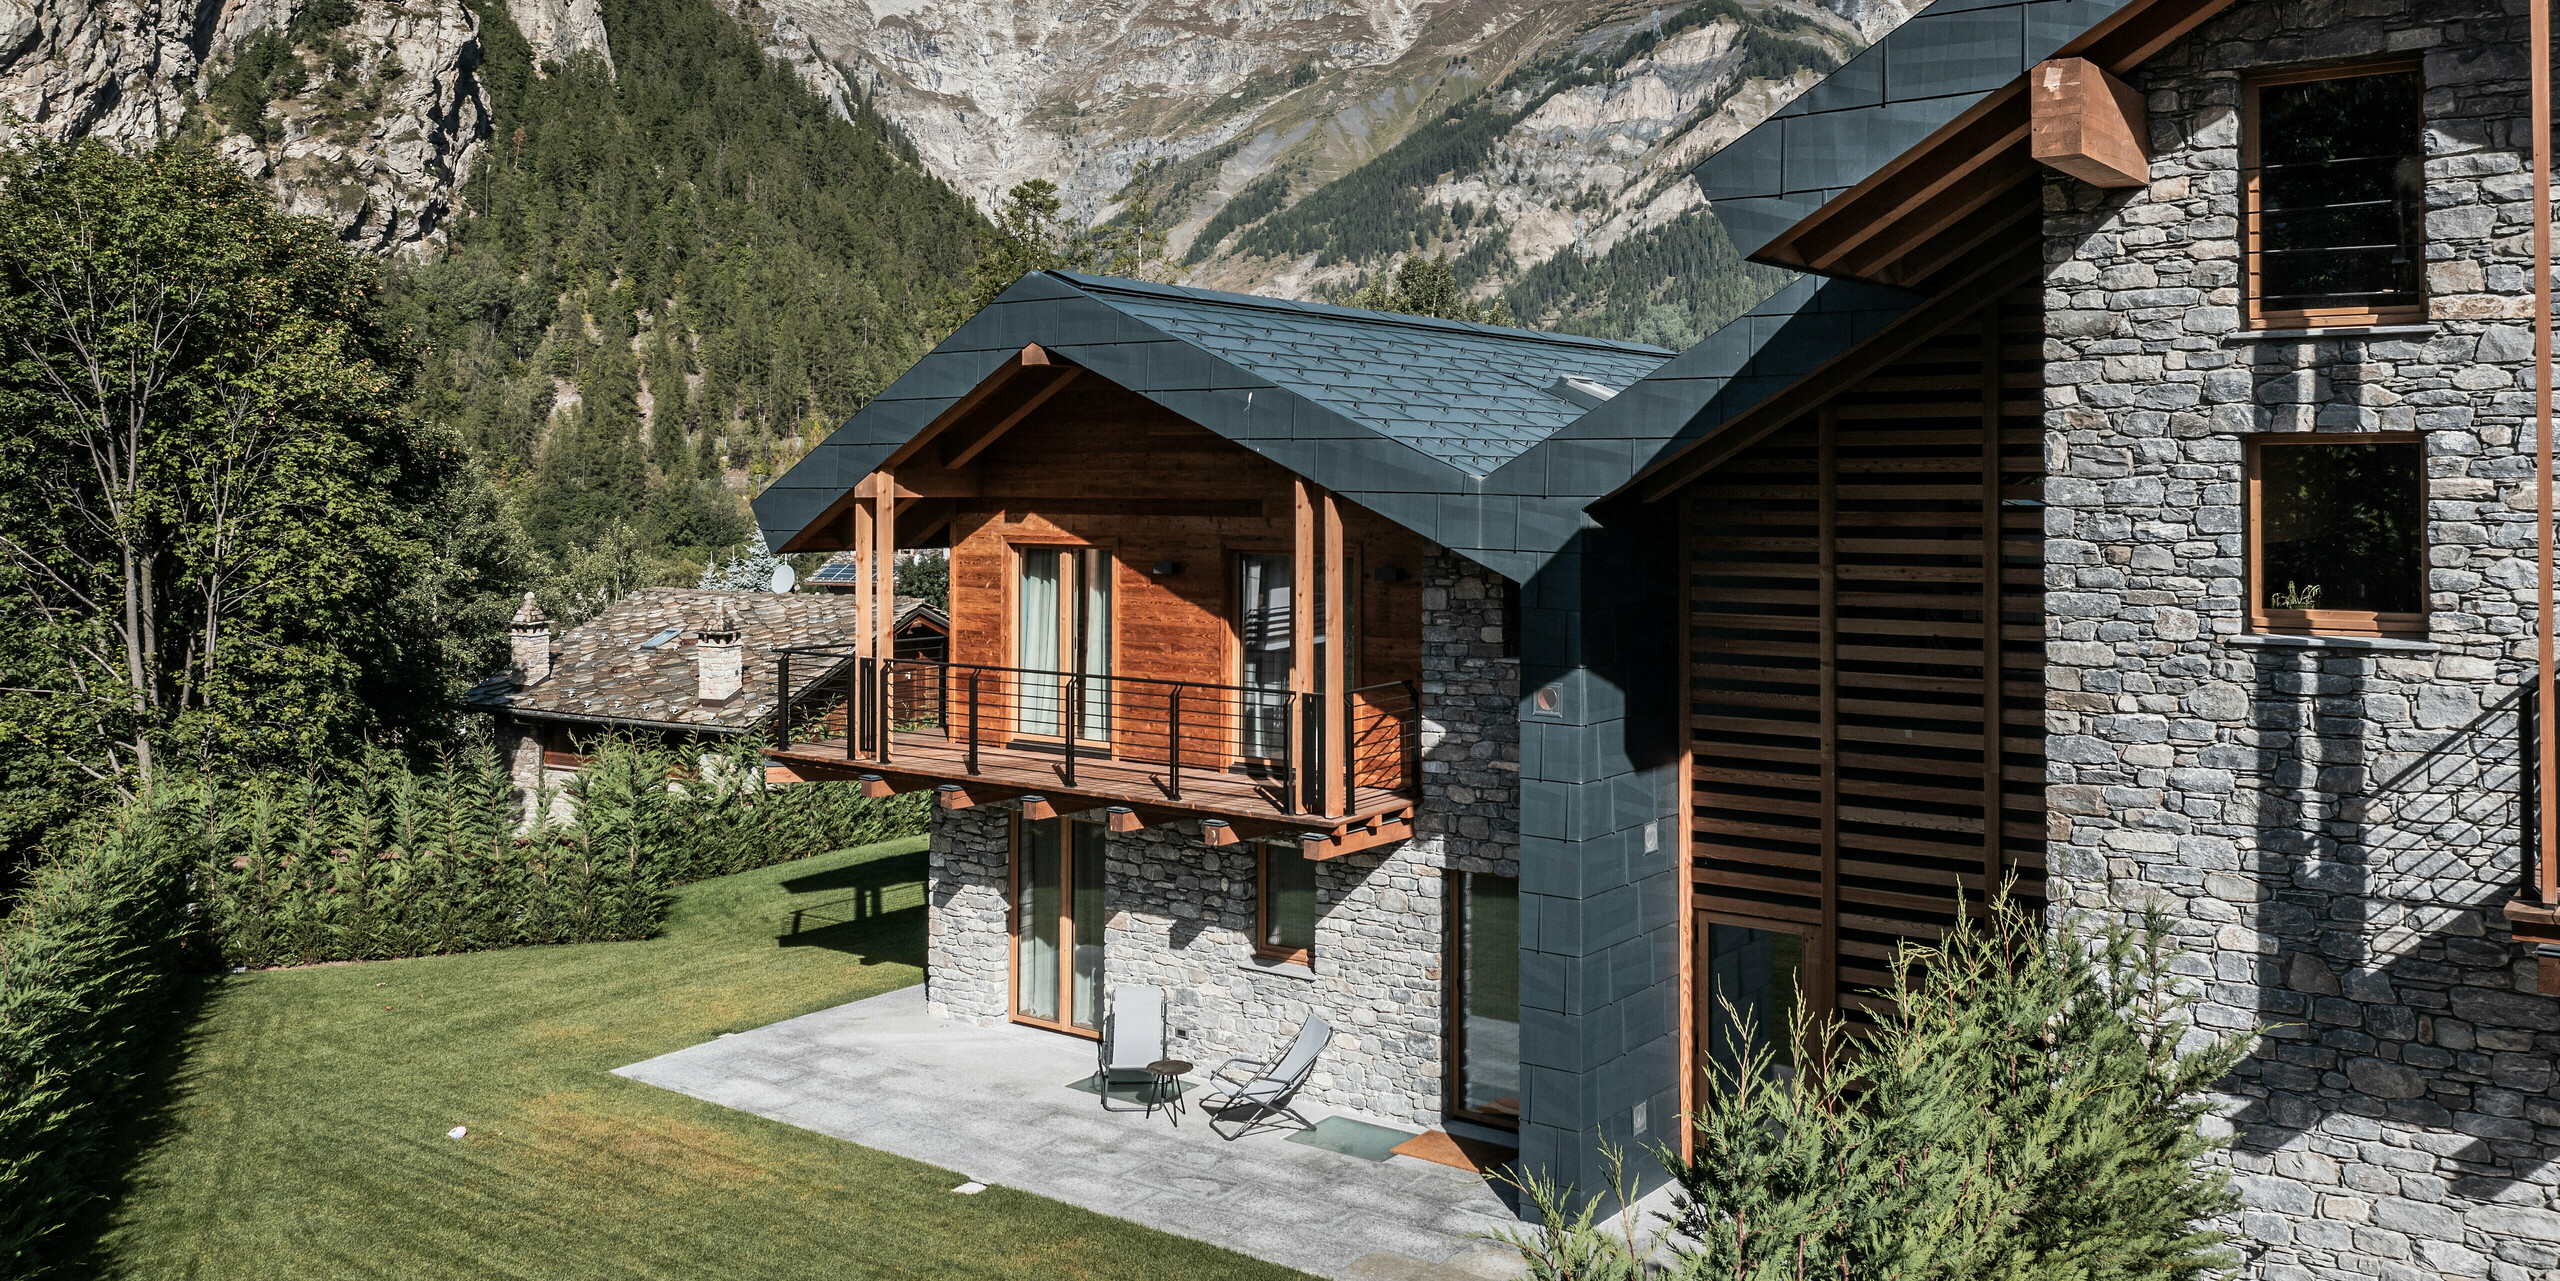 Prächtige Villa in Courmayeur, eingebettet in die atemberaubende Berglandschaft des Aostatals. Die Fassade kombiniert elegant Holz, Stein und PREFA Aluminium in Steingrau. Die Villa zeichnet sich durch mehrere Holzbalkone und eine großzügige Terrasse aus, die zum entspannten Genuss der spektakulären Aussicht auf die umgebenden Gipfel einlädt. Üppiges Grün und die historischen Steinhäuser im Hintergrund vervollständigen das idyllische Alpenpanorama. Die robusten und langlebigen Dach- und Fassadenpaneele FX.12 aus PREFA Blech bieten dem Gebäude starken Schutz vor winterlichen Bedingungen.